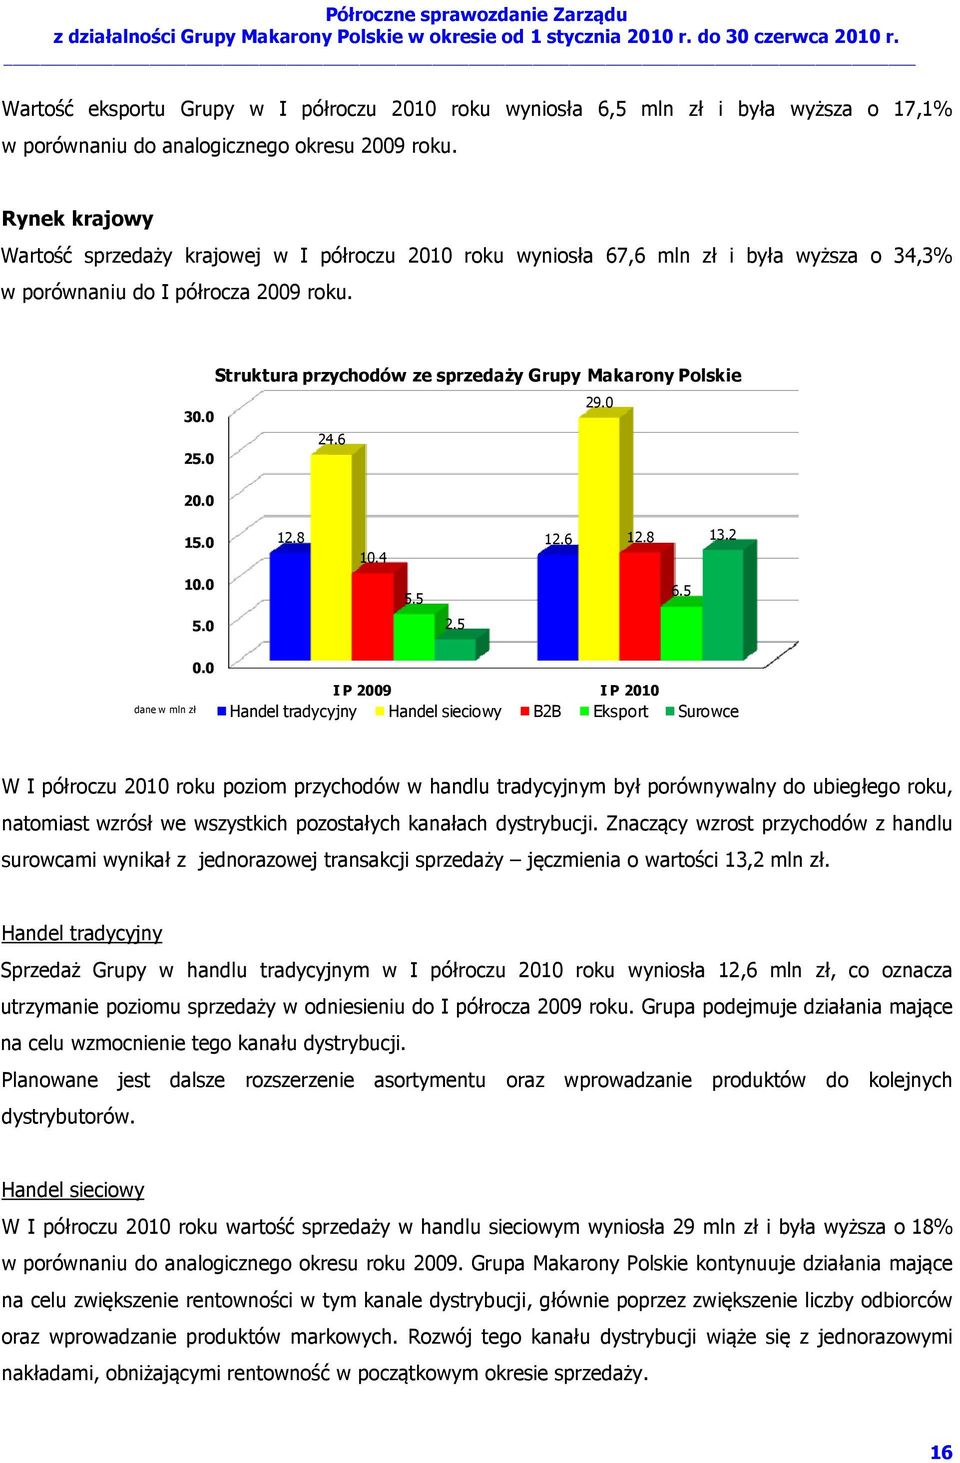 Struktura przychodów ze sprzedaży Grupy Makarony Polskie 29.0 30.0 24.6 25.0 20.0 15.0 12.8 12.6 10.4 12.8 13.2 10.0 5.5 6.5 5.0 2.5 dane w mln zł 0.